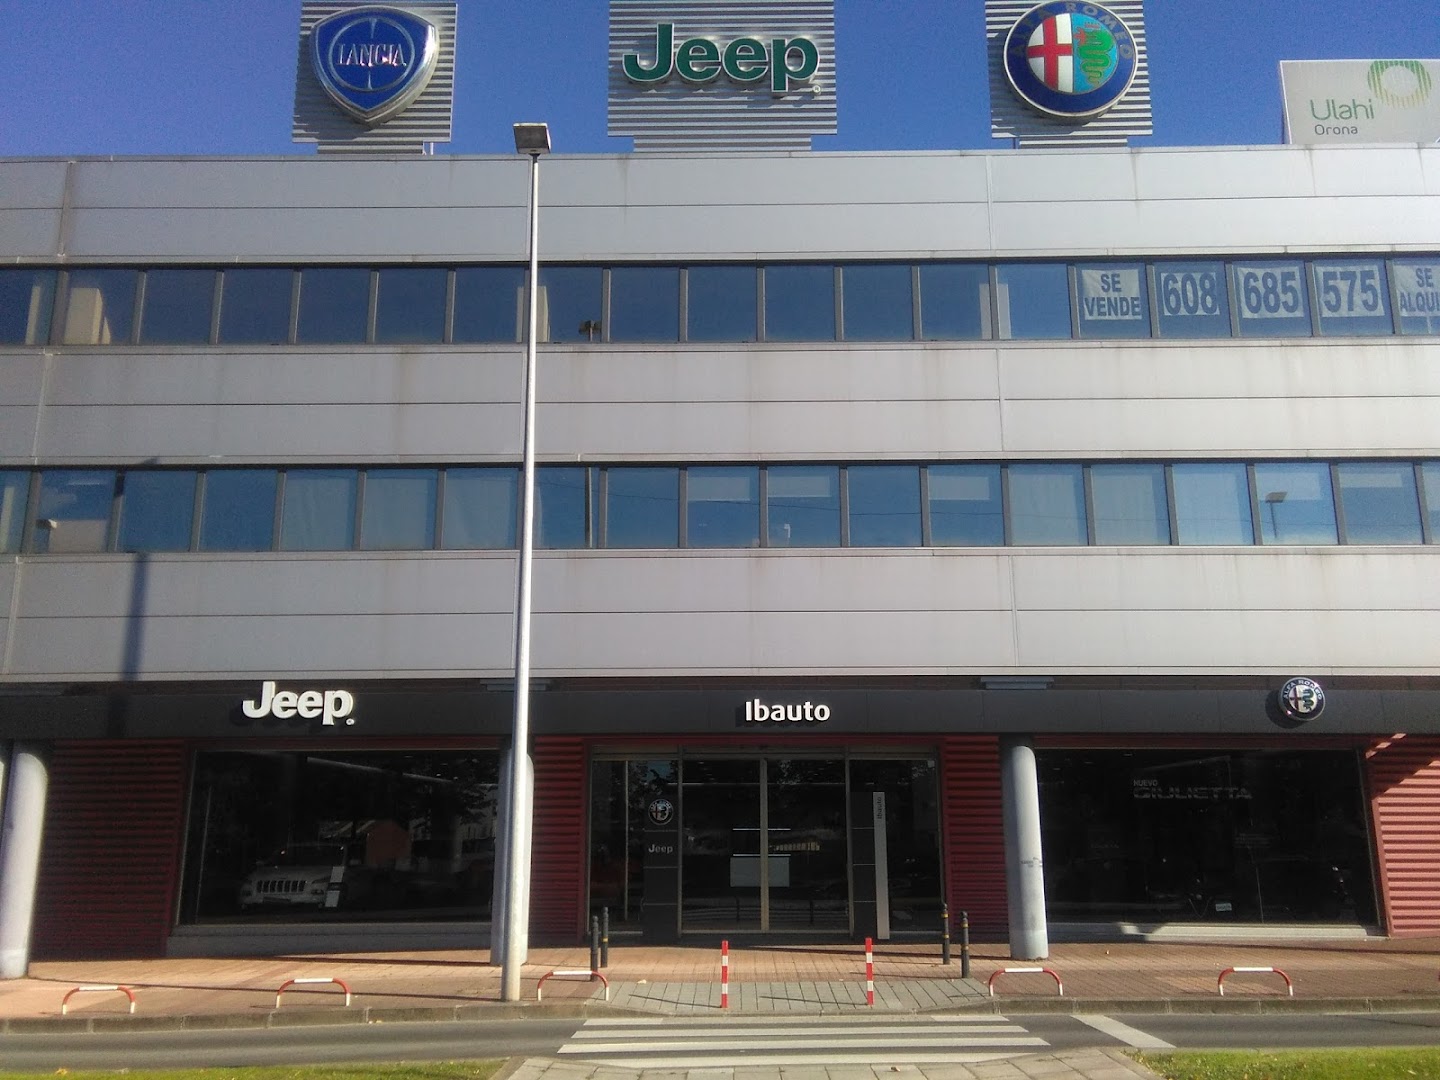 IBAUTO Único Concesionario Oficial Alfa Romeo® y Jeep® en Vizcaya